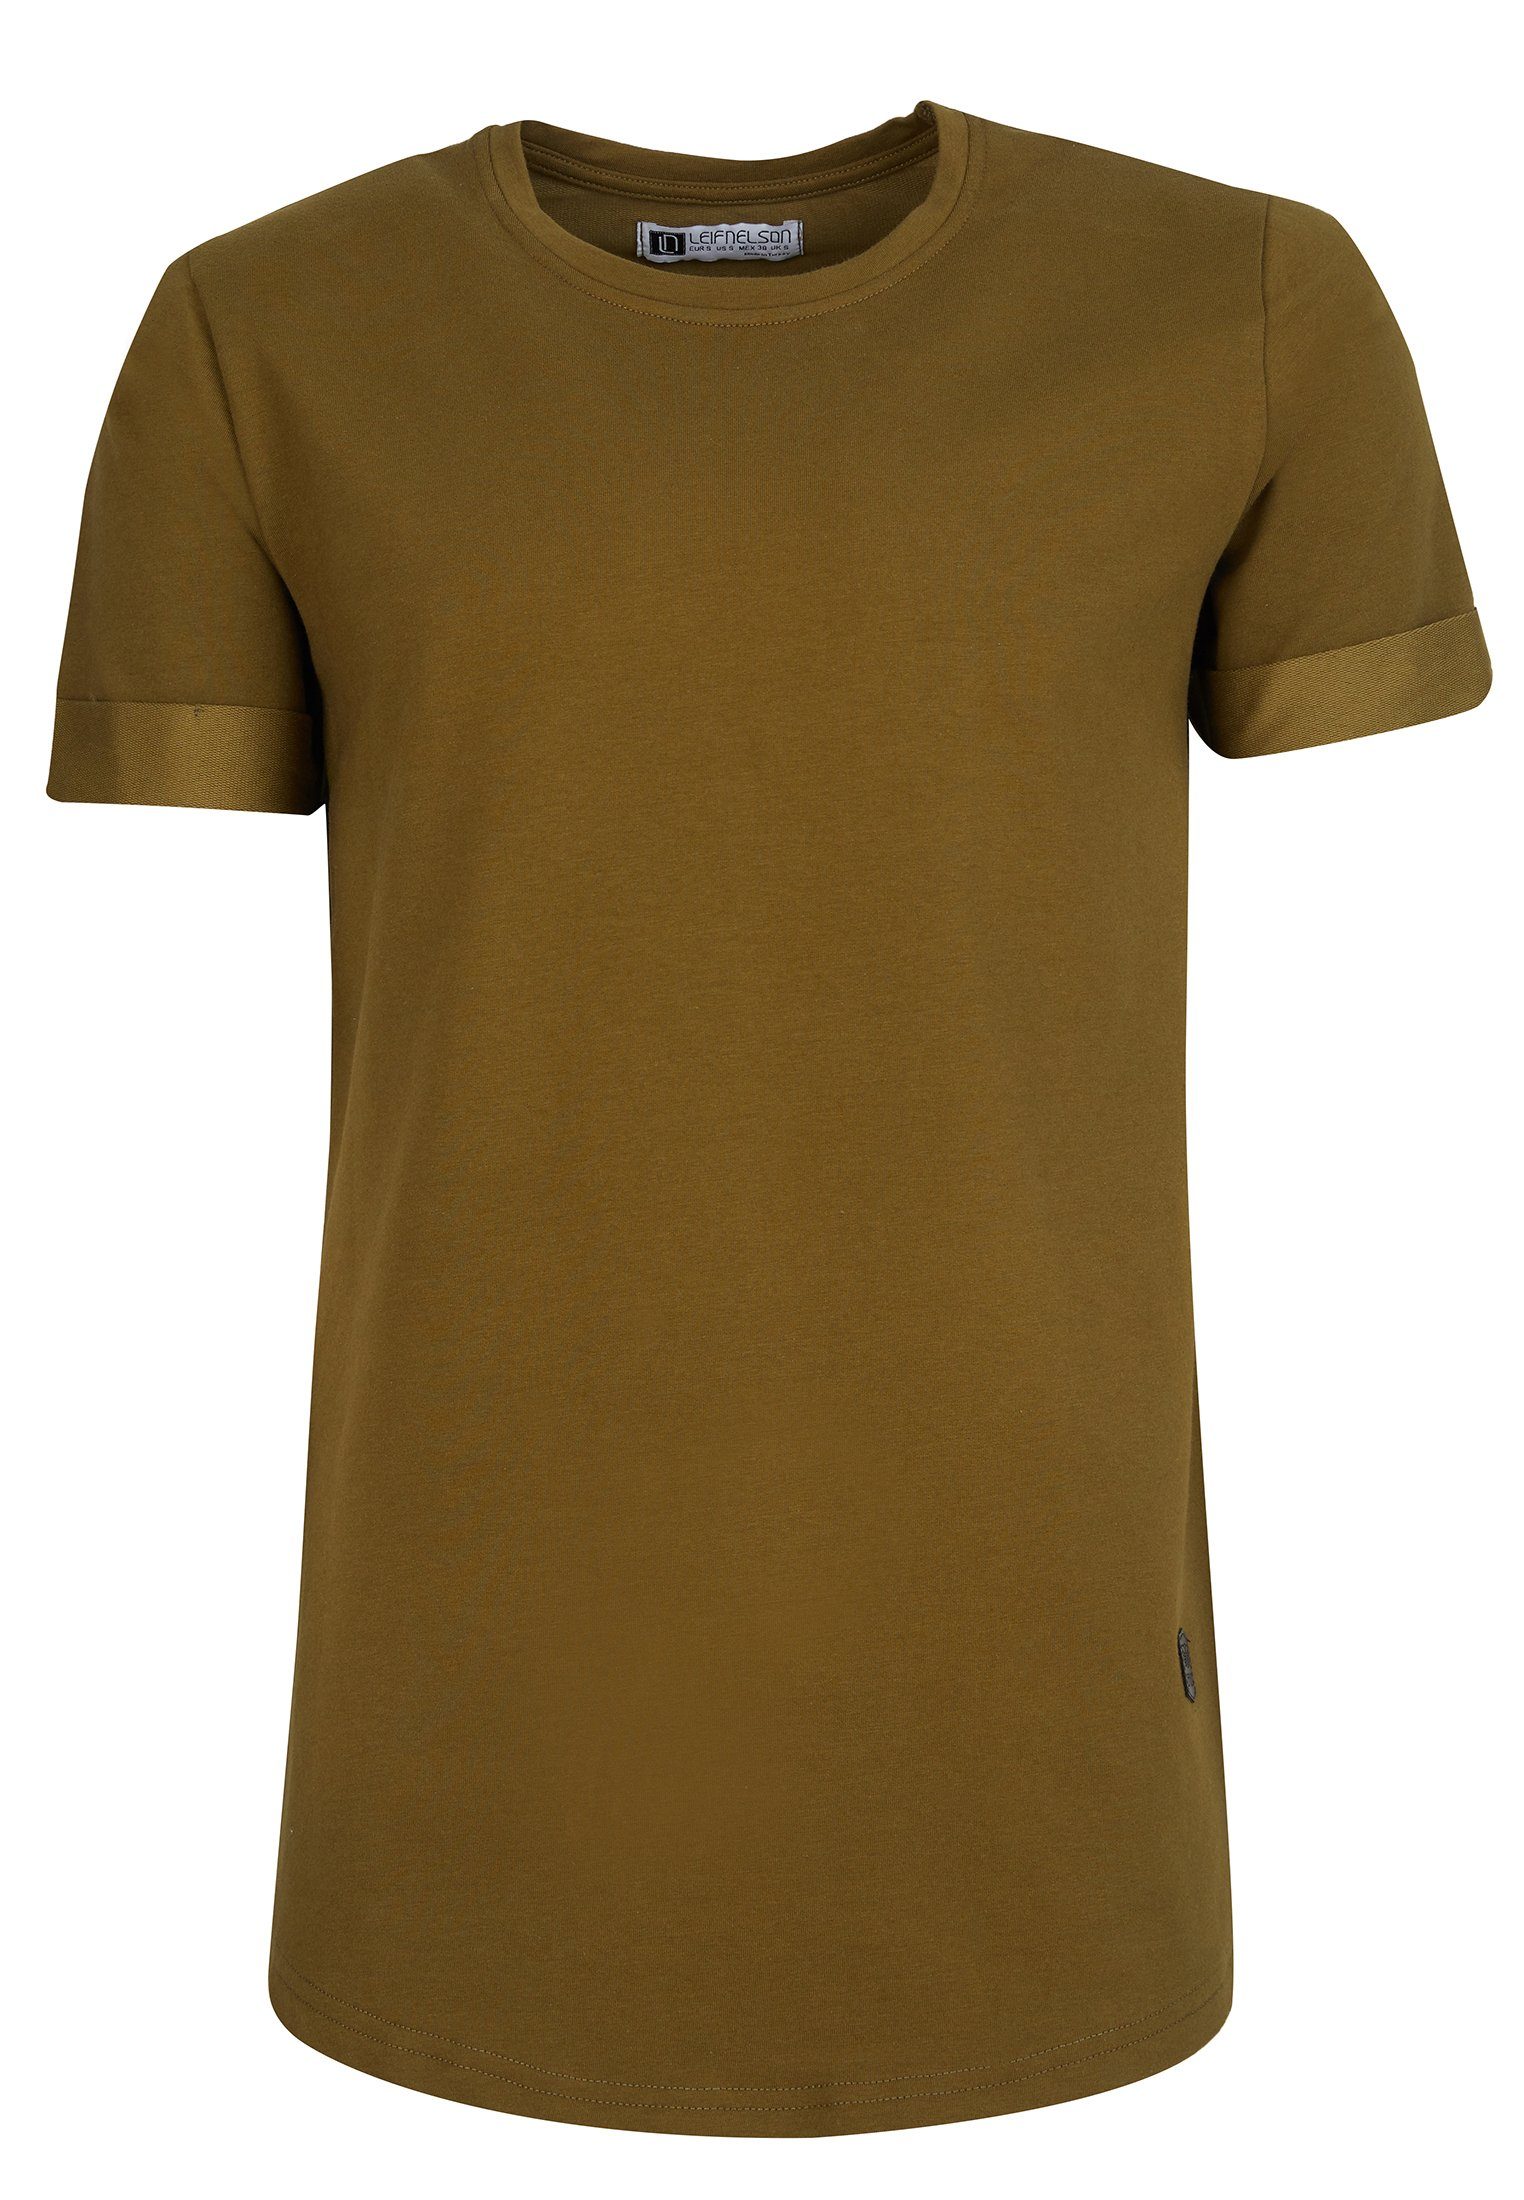 Nelson Rundhals LN-6368 T-Shirt khaki T-Shirt Leif Herren